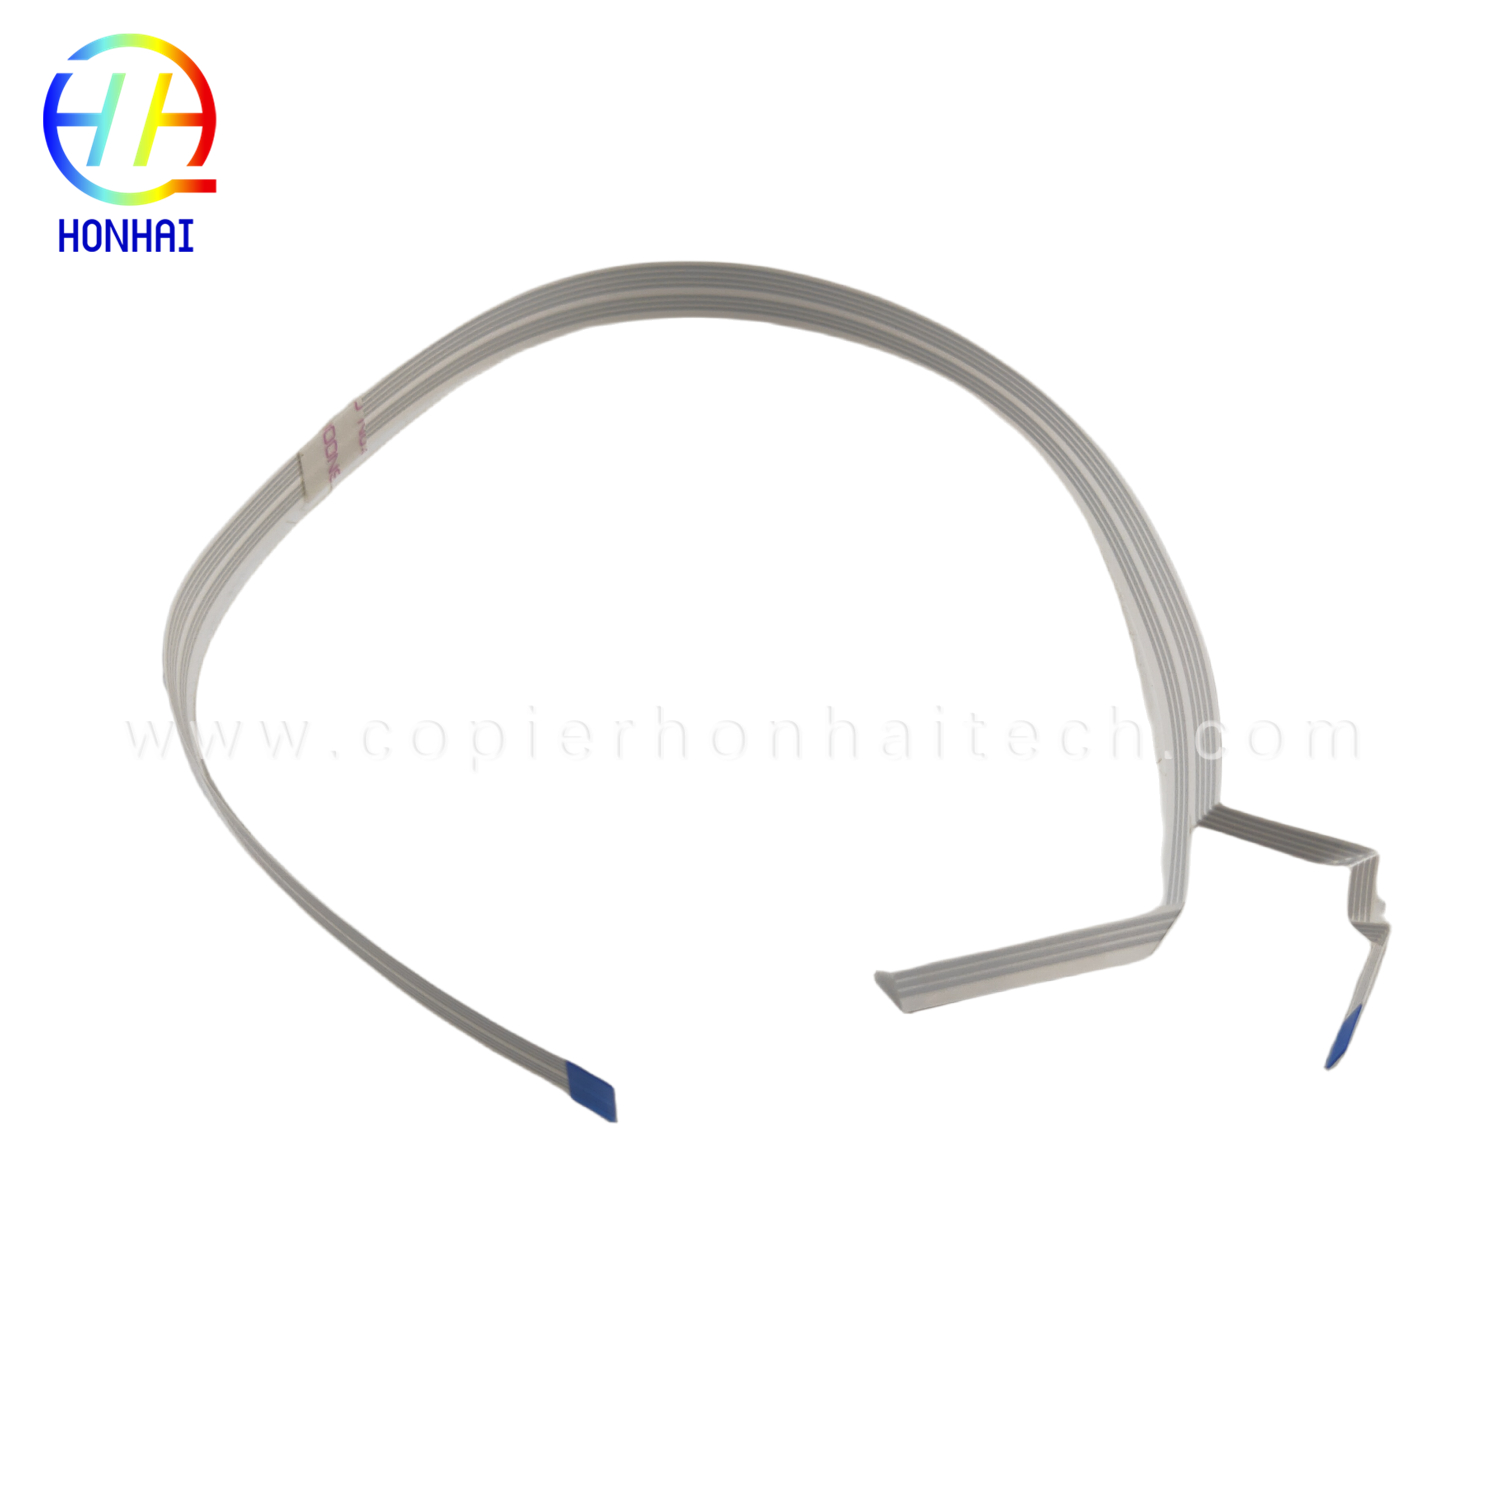 Sensor Cable for Epson L455 L565 L380